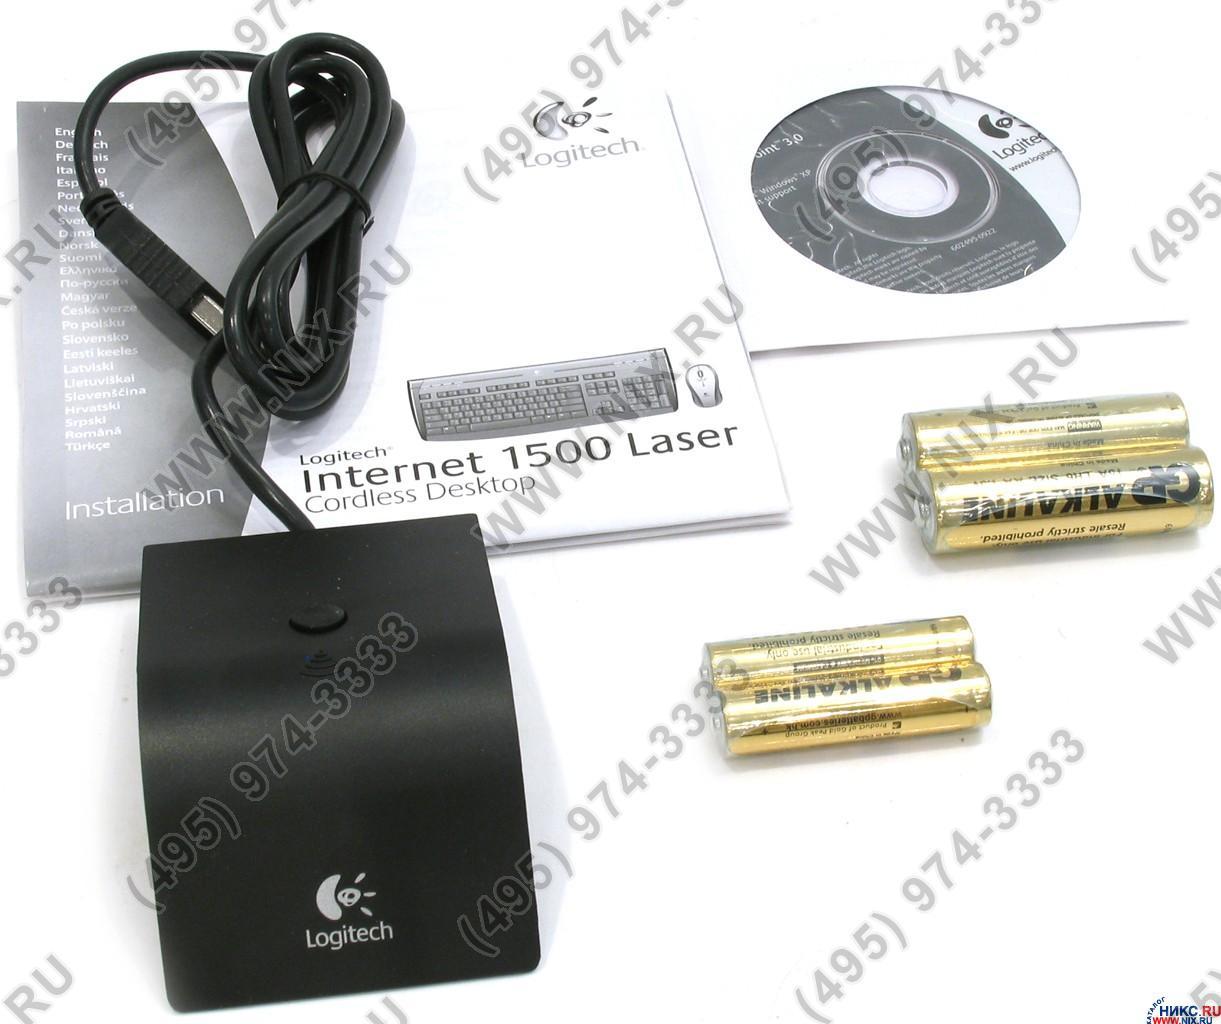 Internet 1500 laser cordless desktop драйвер скачать